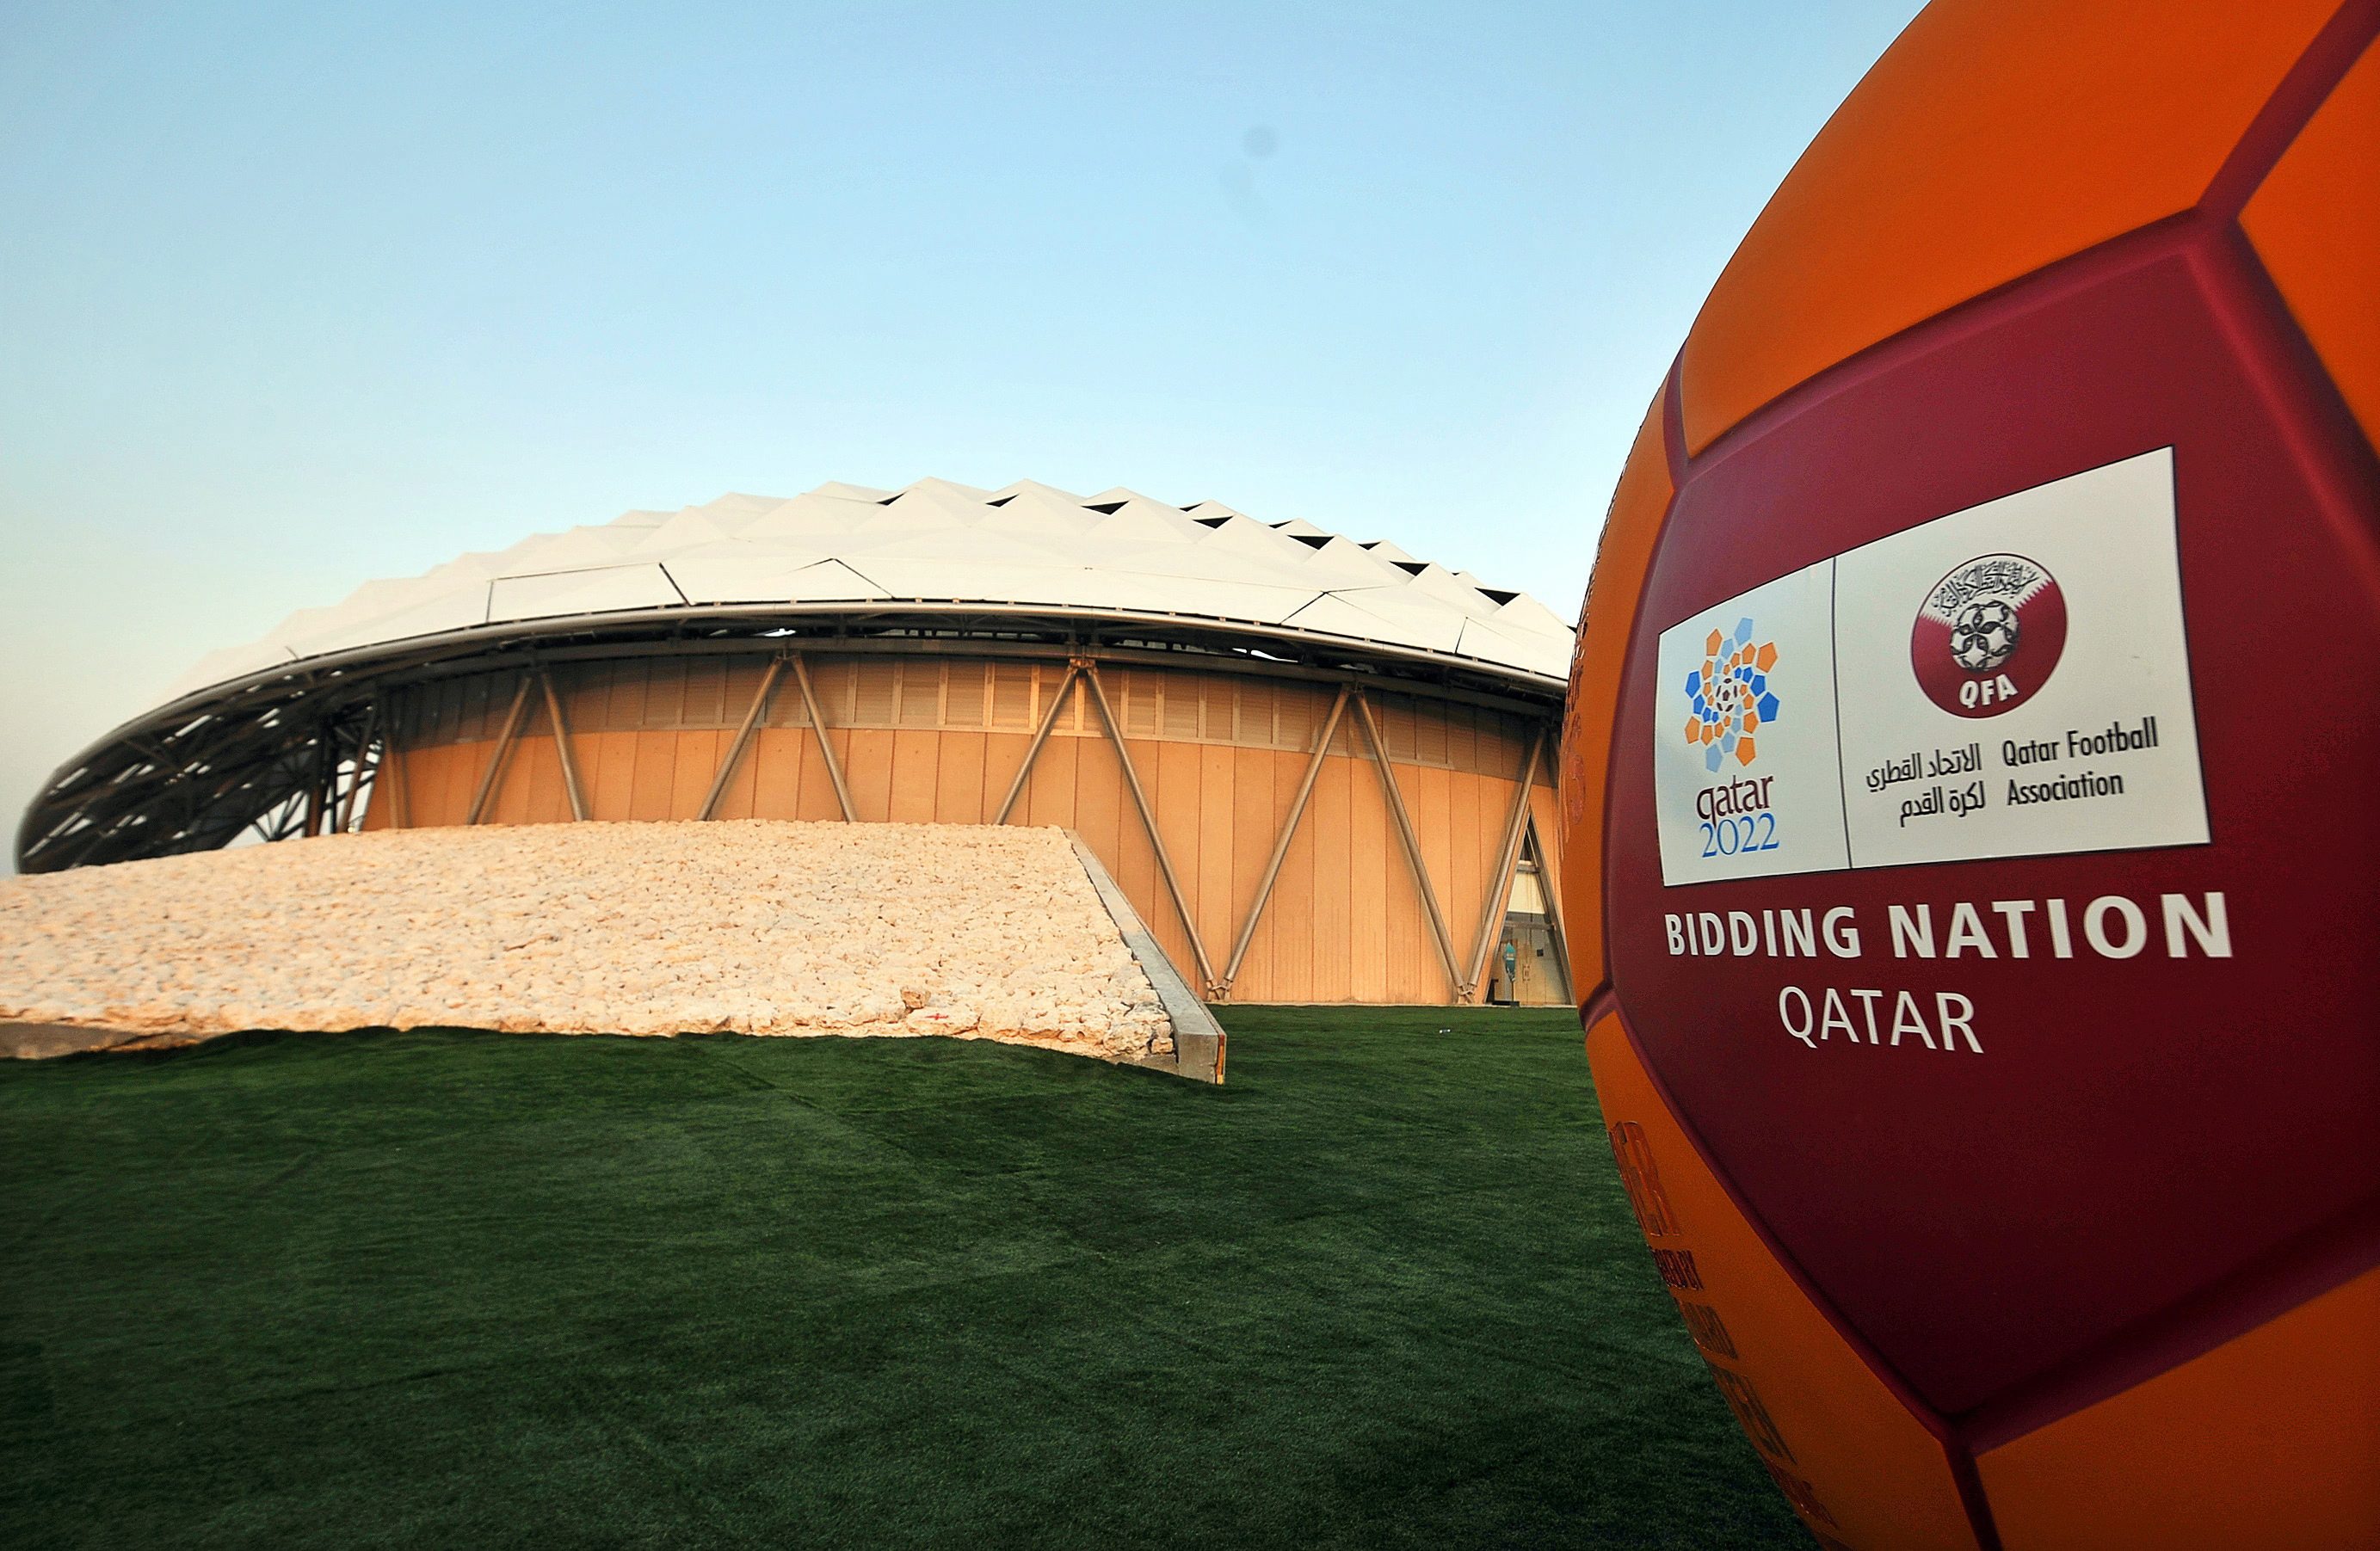 Κατάρ: Το Μουντιάλ 2022 θα γίνει εδώ και θα είναι από τα καλύτερα